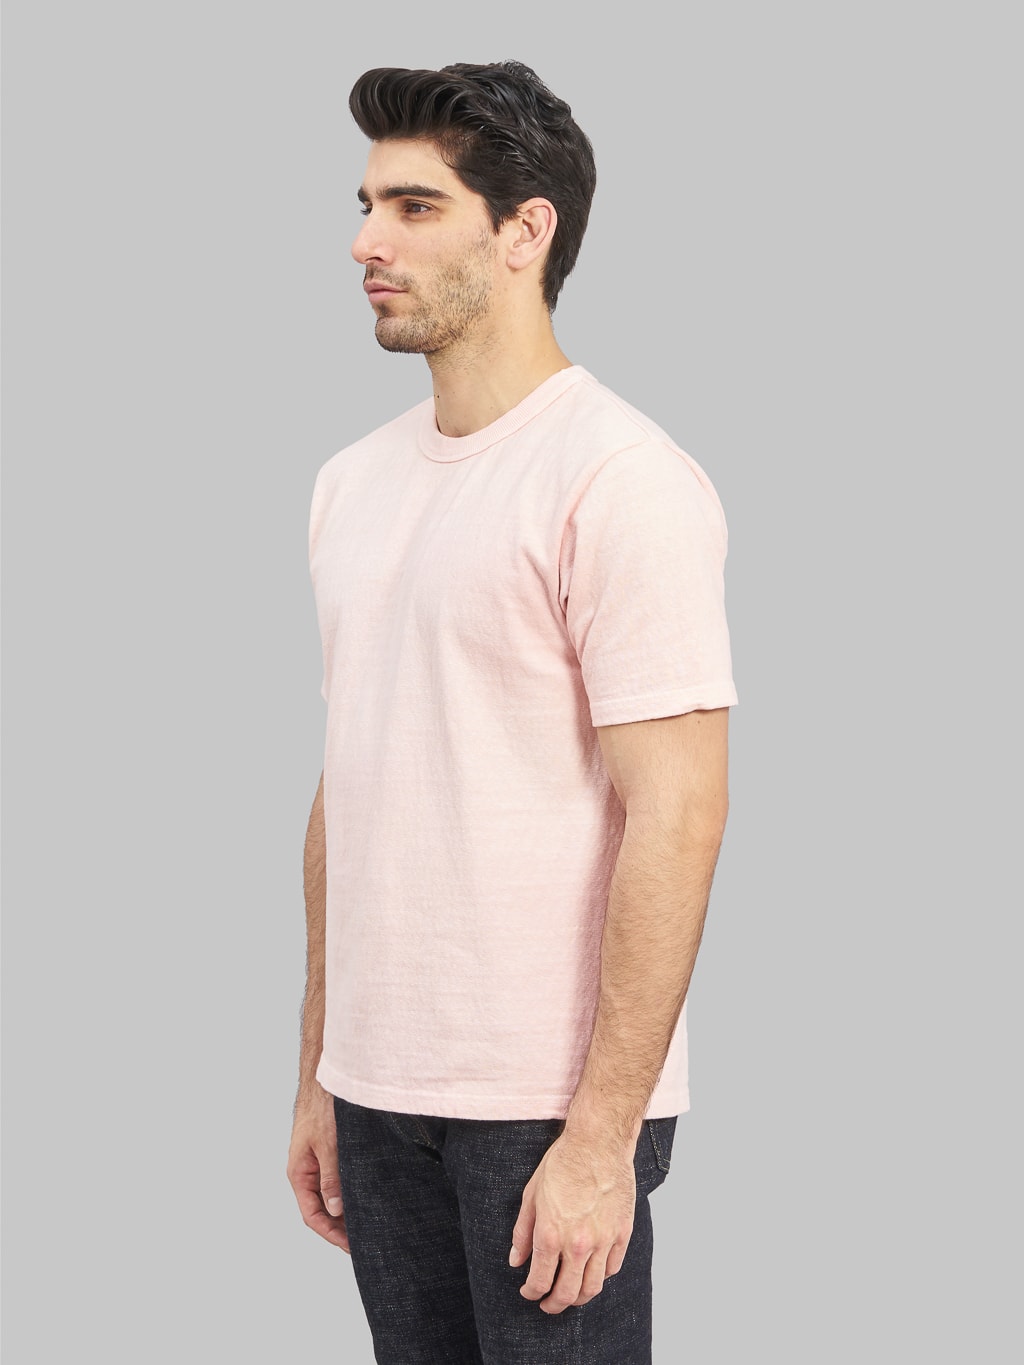 UES N8 Slub Nep Short Sleeve TShirt pink  side fit